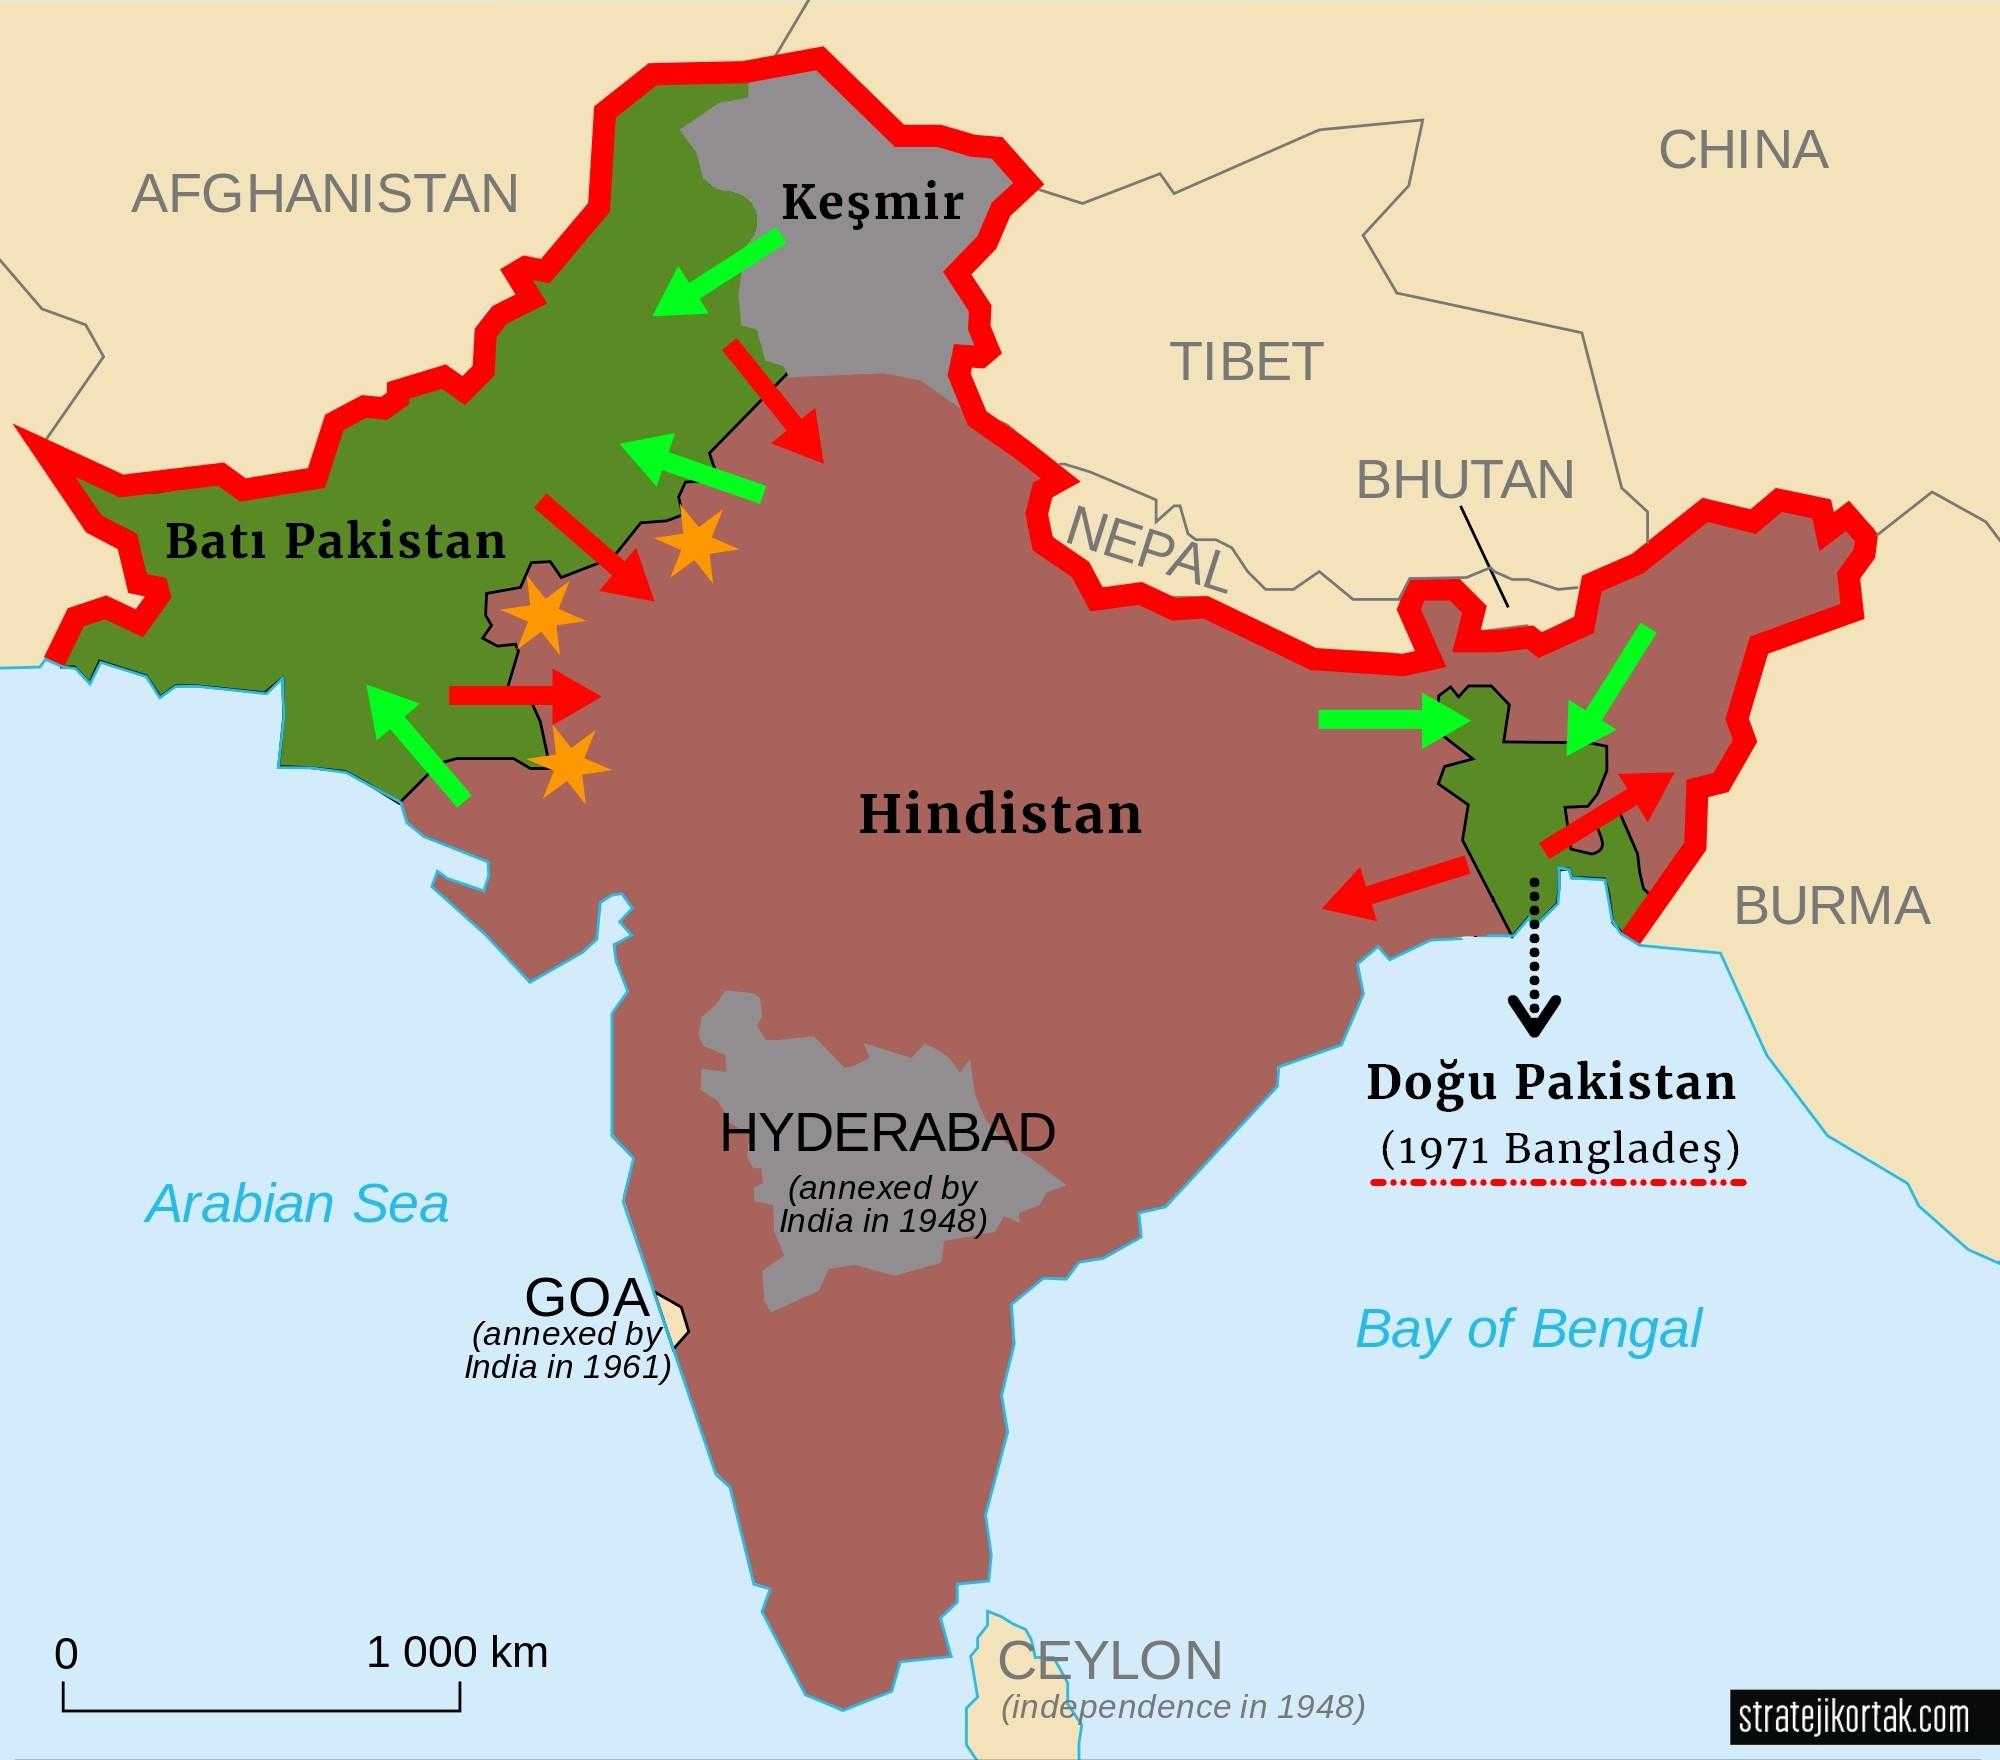 Bangladeş Nerede? (Bangladeş'in bağımsızlığından önce Hint Yarımadasında harita)